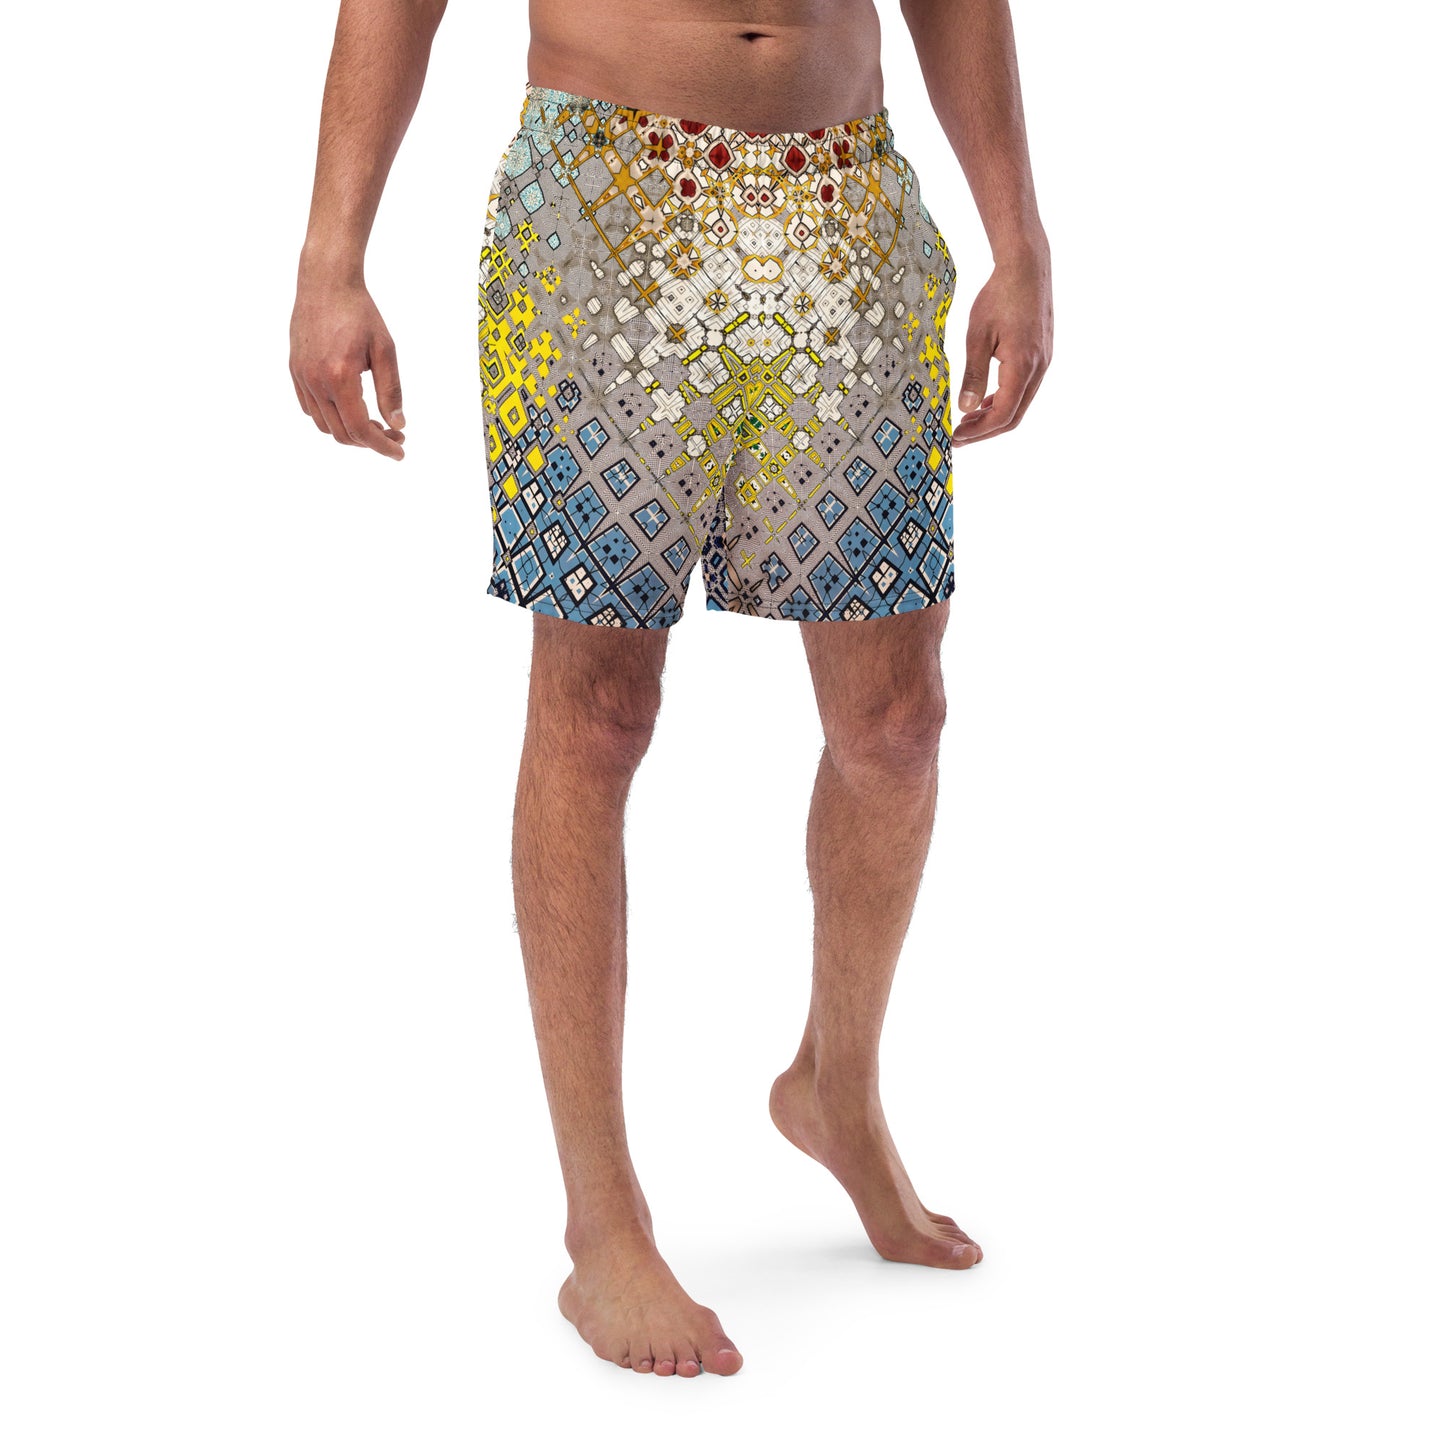 Men’s swim trunks - Lichtenstein